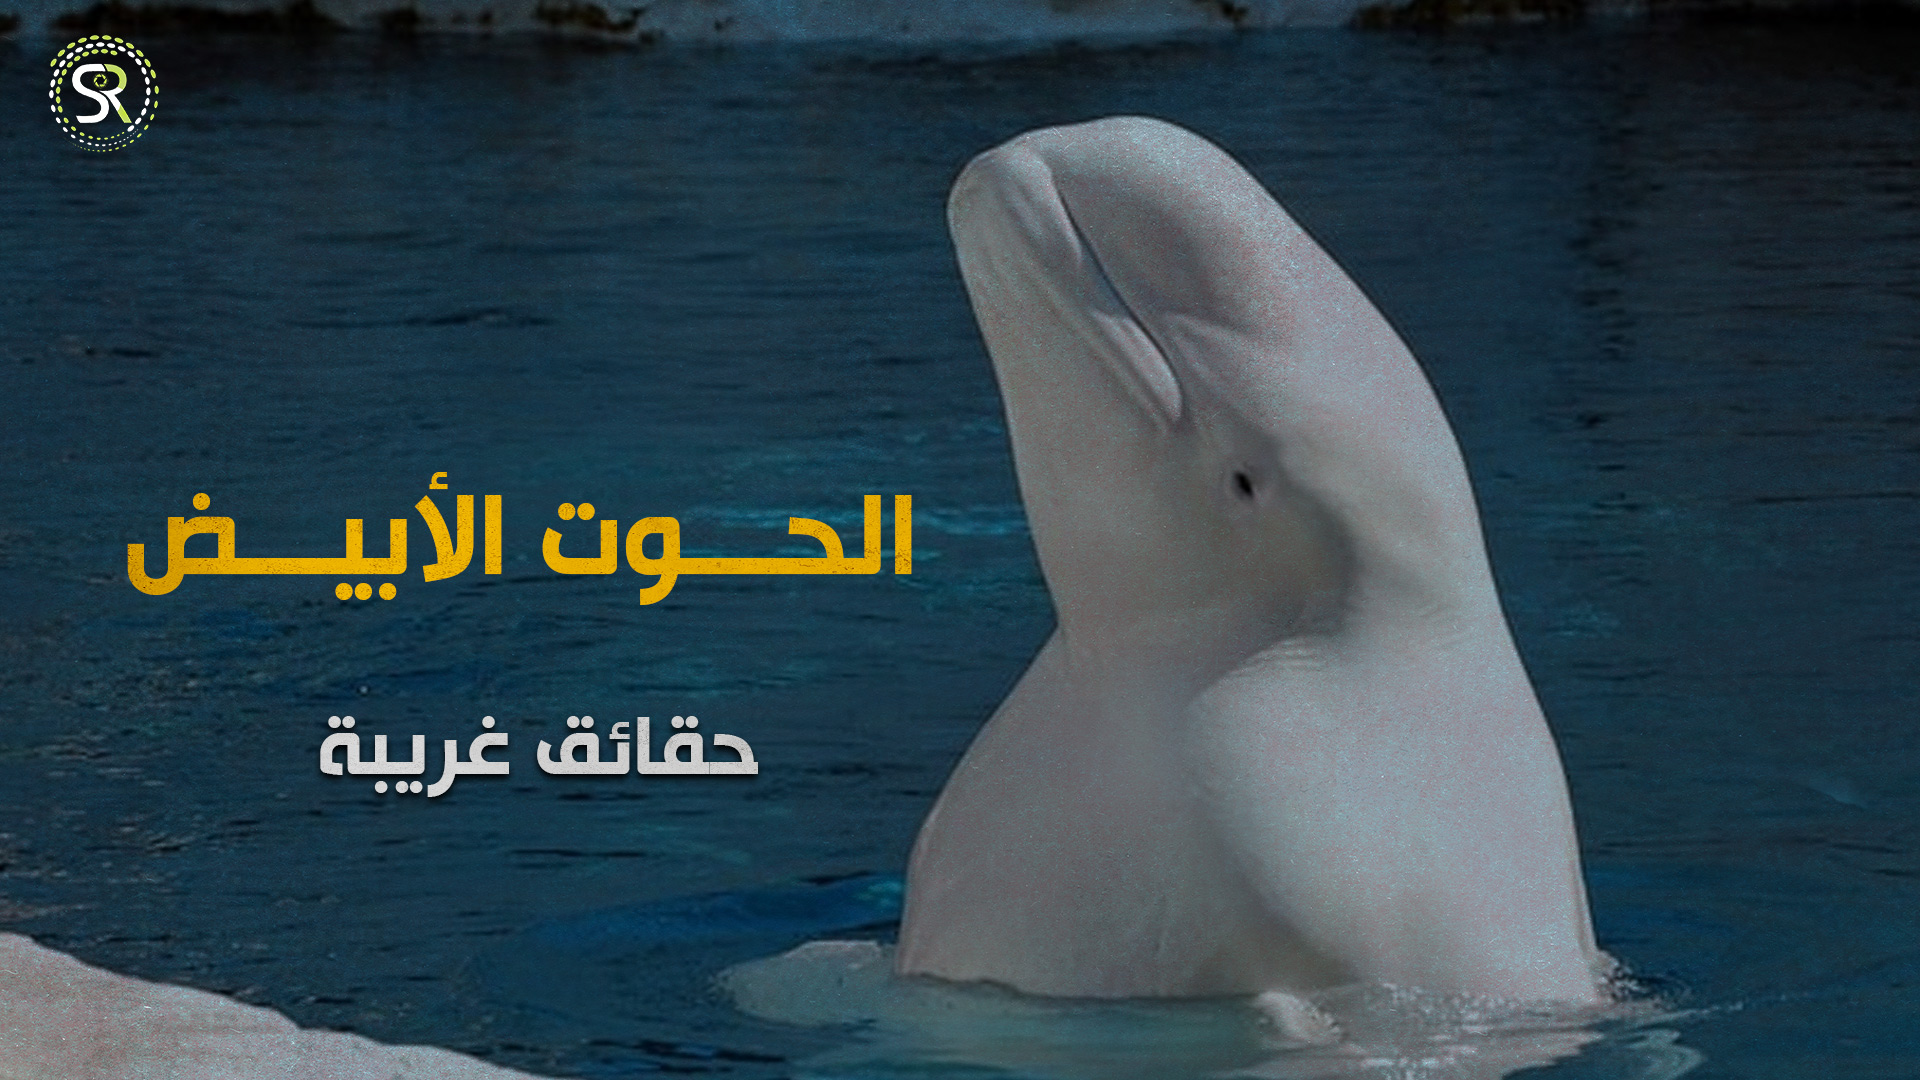 يقلِّد لغة البشر! حقائق مهمَّةٌ عن الحوت الأبيض (بيلوغا)